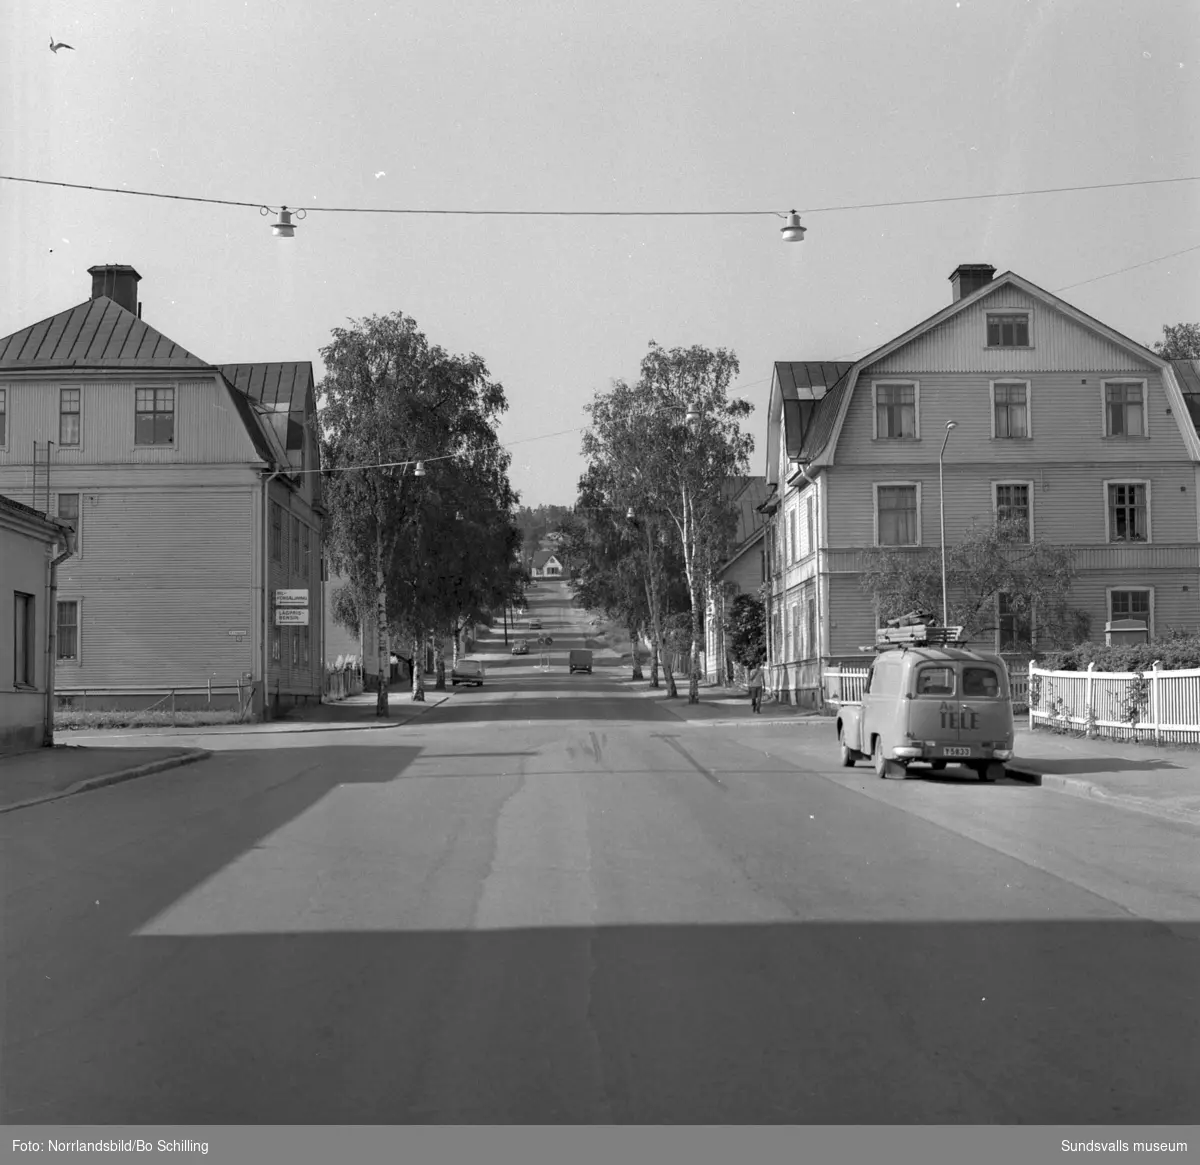 Gatuvyer kring kvarteret Debet (Bergsgatan, Esplanaden, Östra Långgatan, Nybrogatan) som ska rivas och ge plats för OK bilvårdsanläggning, Folkets hus, hotell och restaurang.